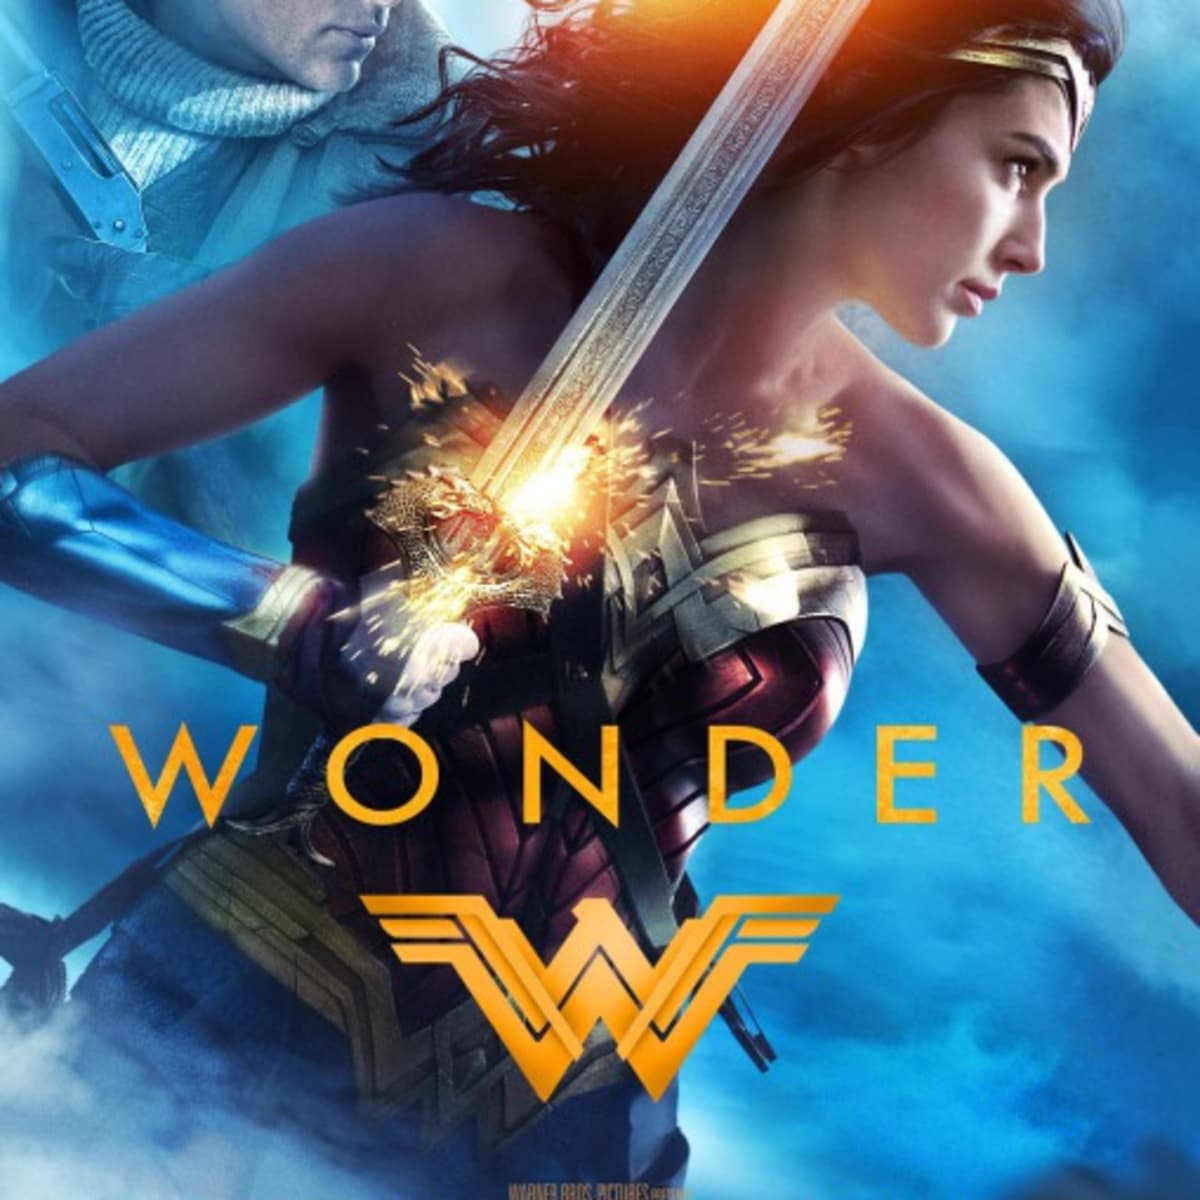 Wonder Woman (2017 film) - Wikipedia